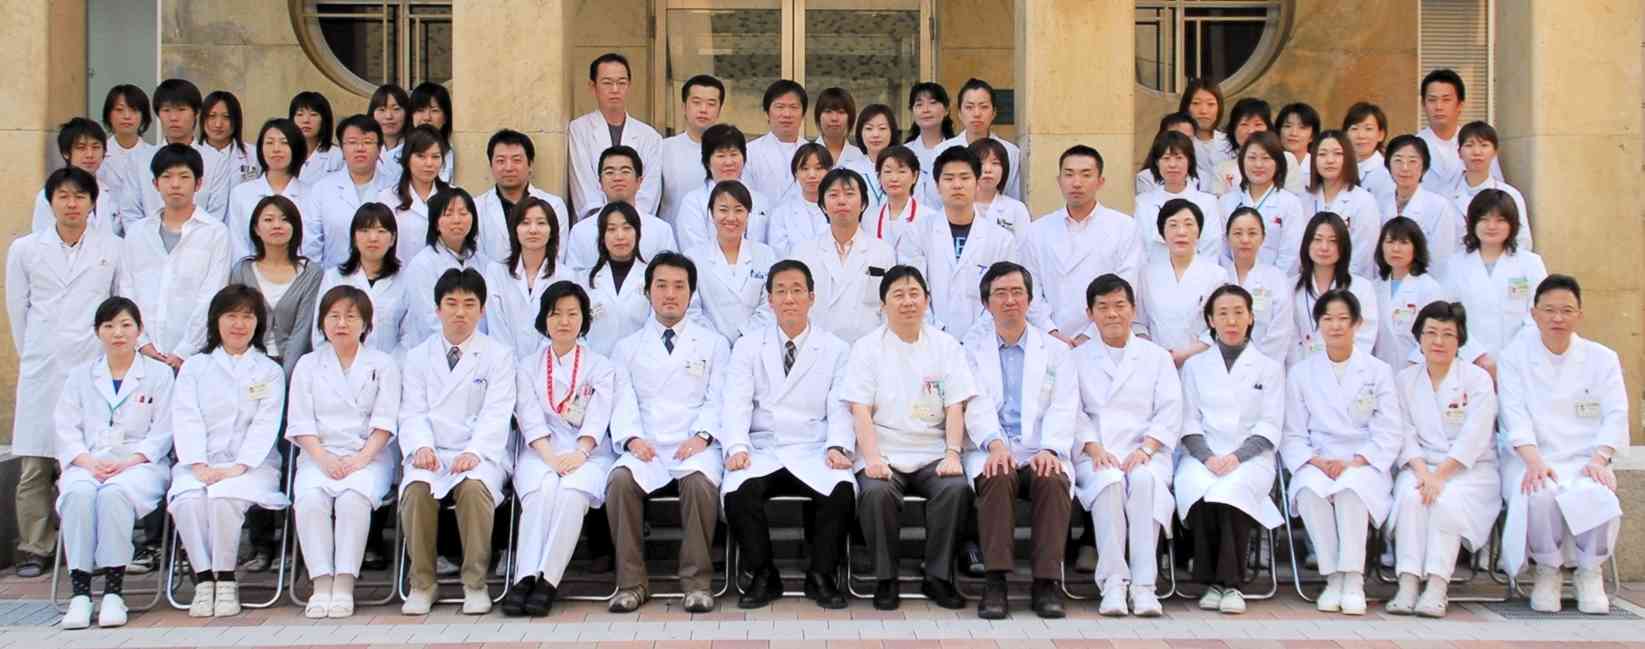 2006年、筆者が熊本大病態情報解析学分野の教授に就任した当時の検査技師、教員、大学院生ら